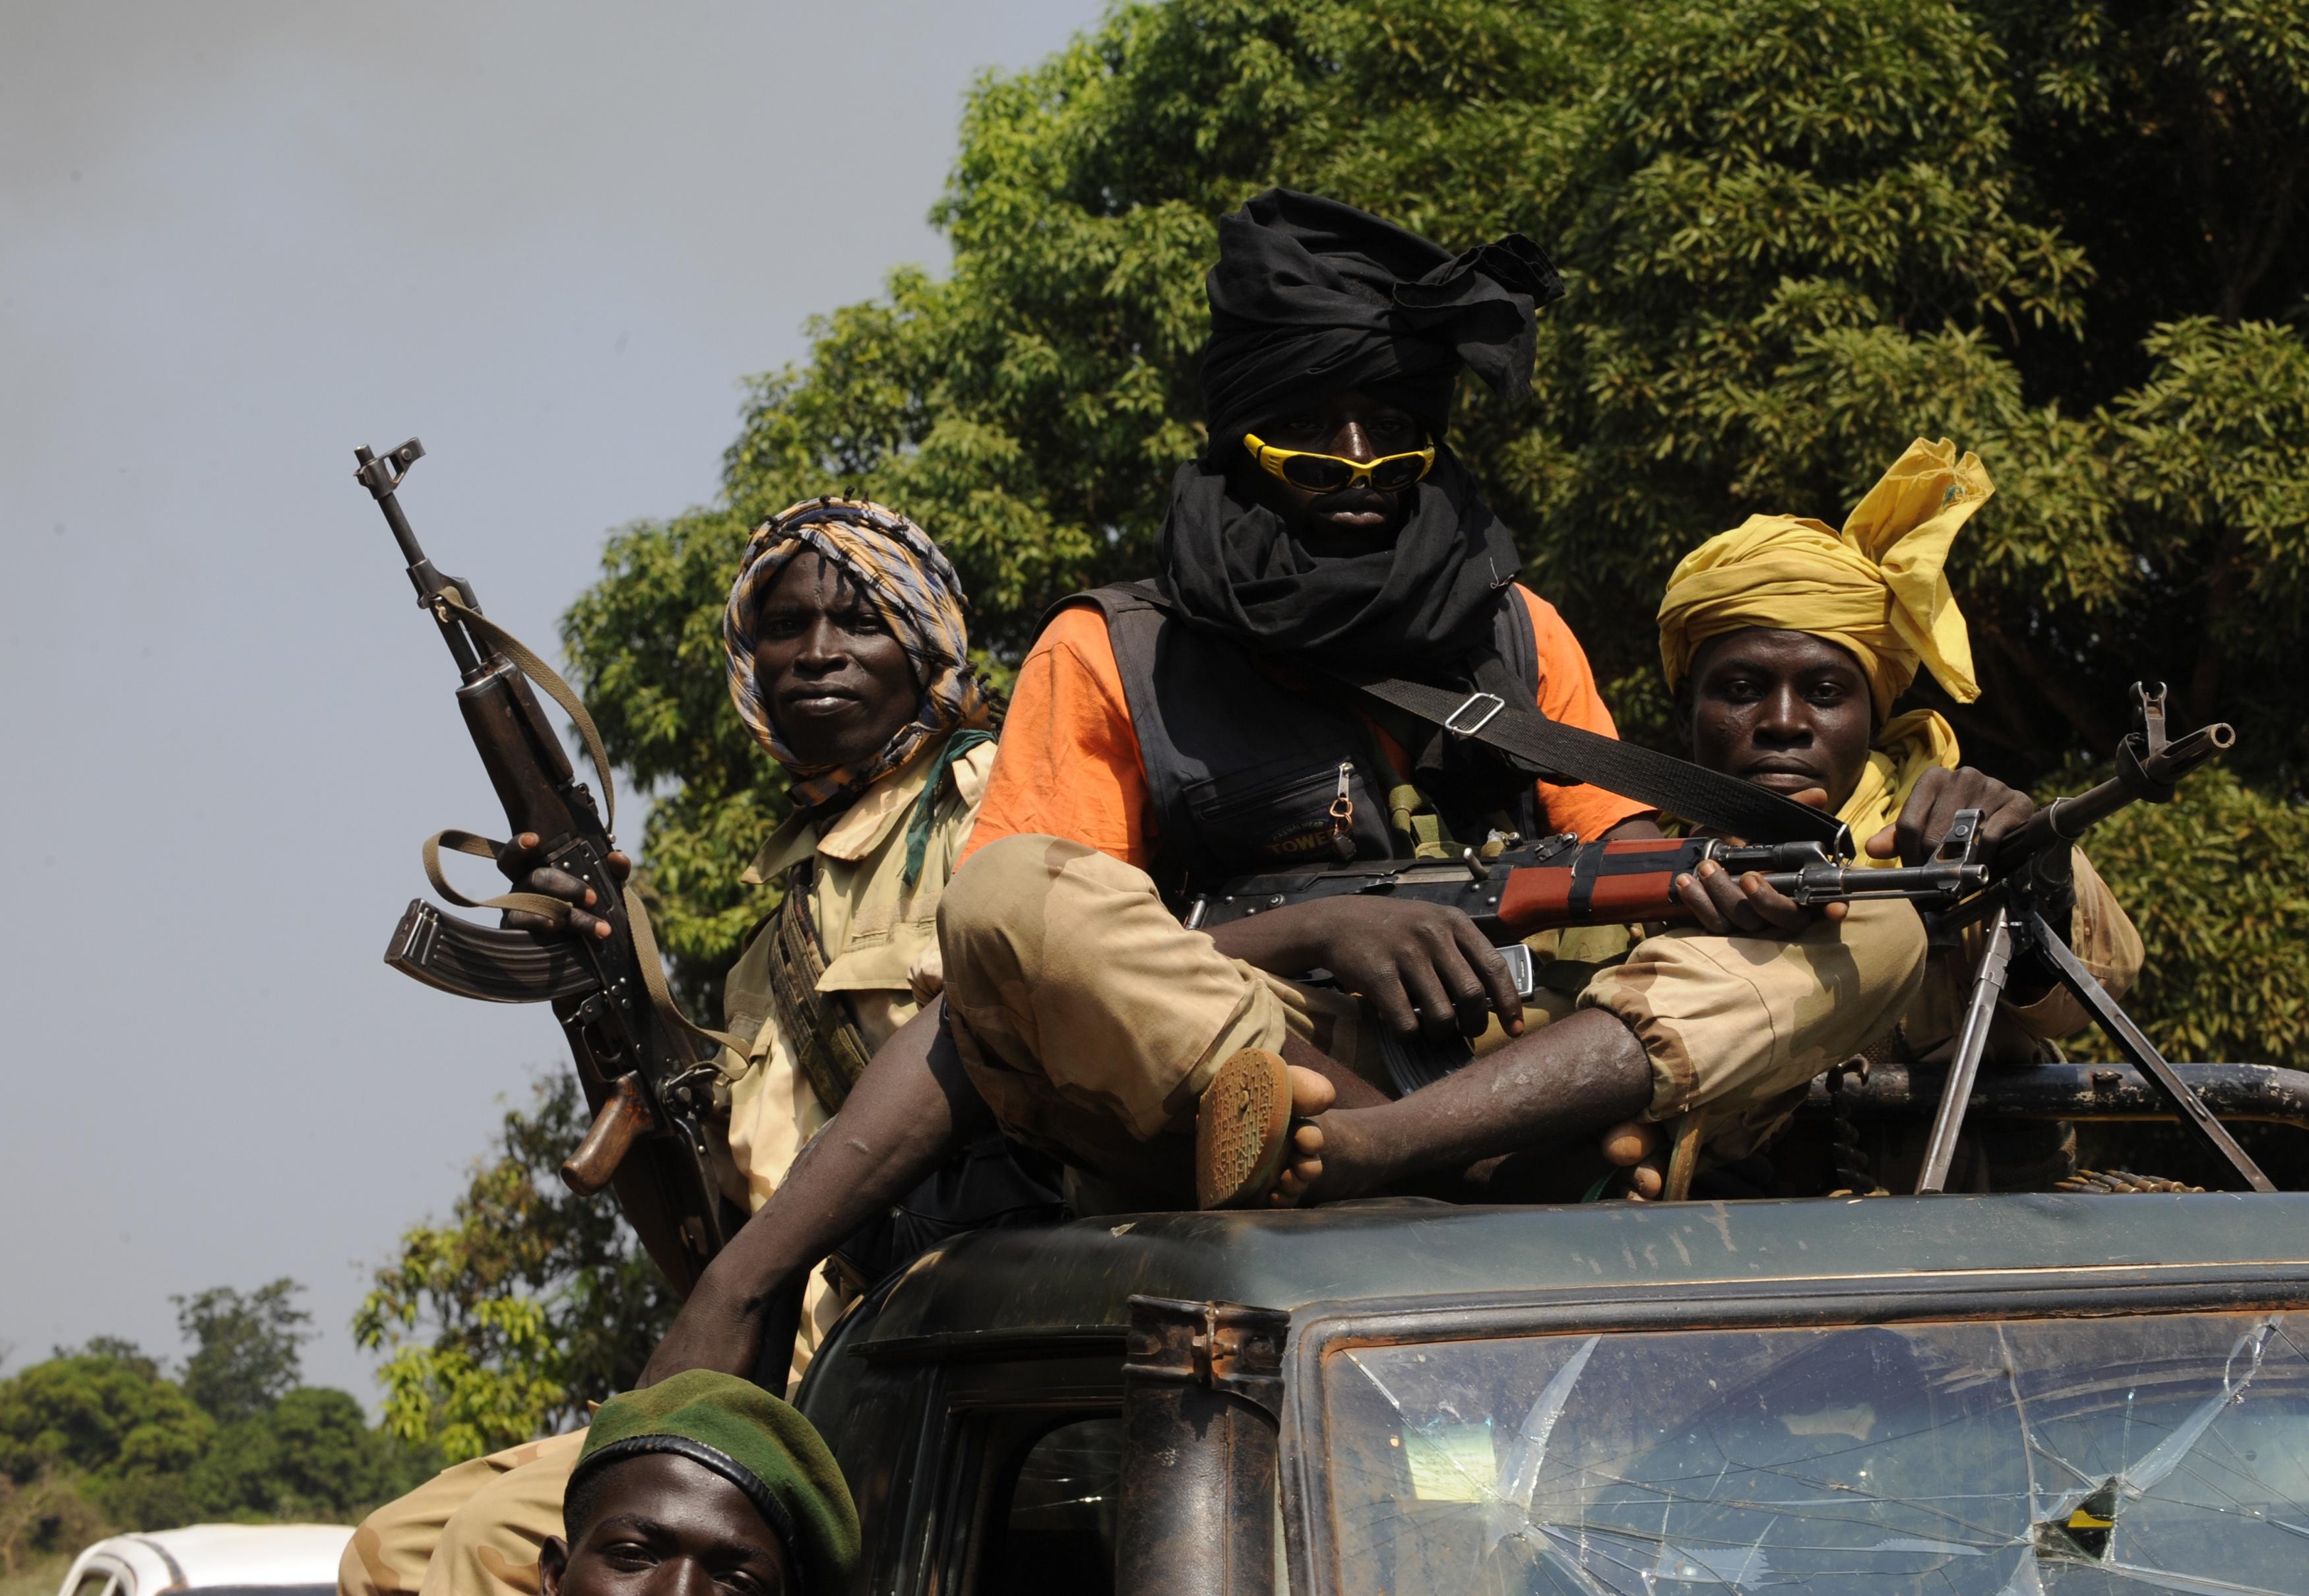 Konfliktdiamanter har använts till att finansiera väpnade grupper i Centralafrikanska republiken. Snart kan lagrade diamanter komma ut på marknaden. Foto: Sia Kambou/AFP/Getty Image